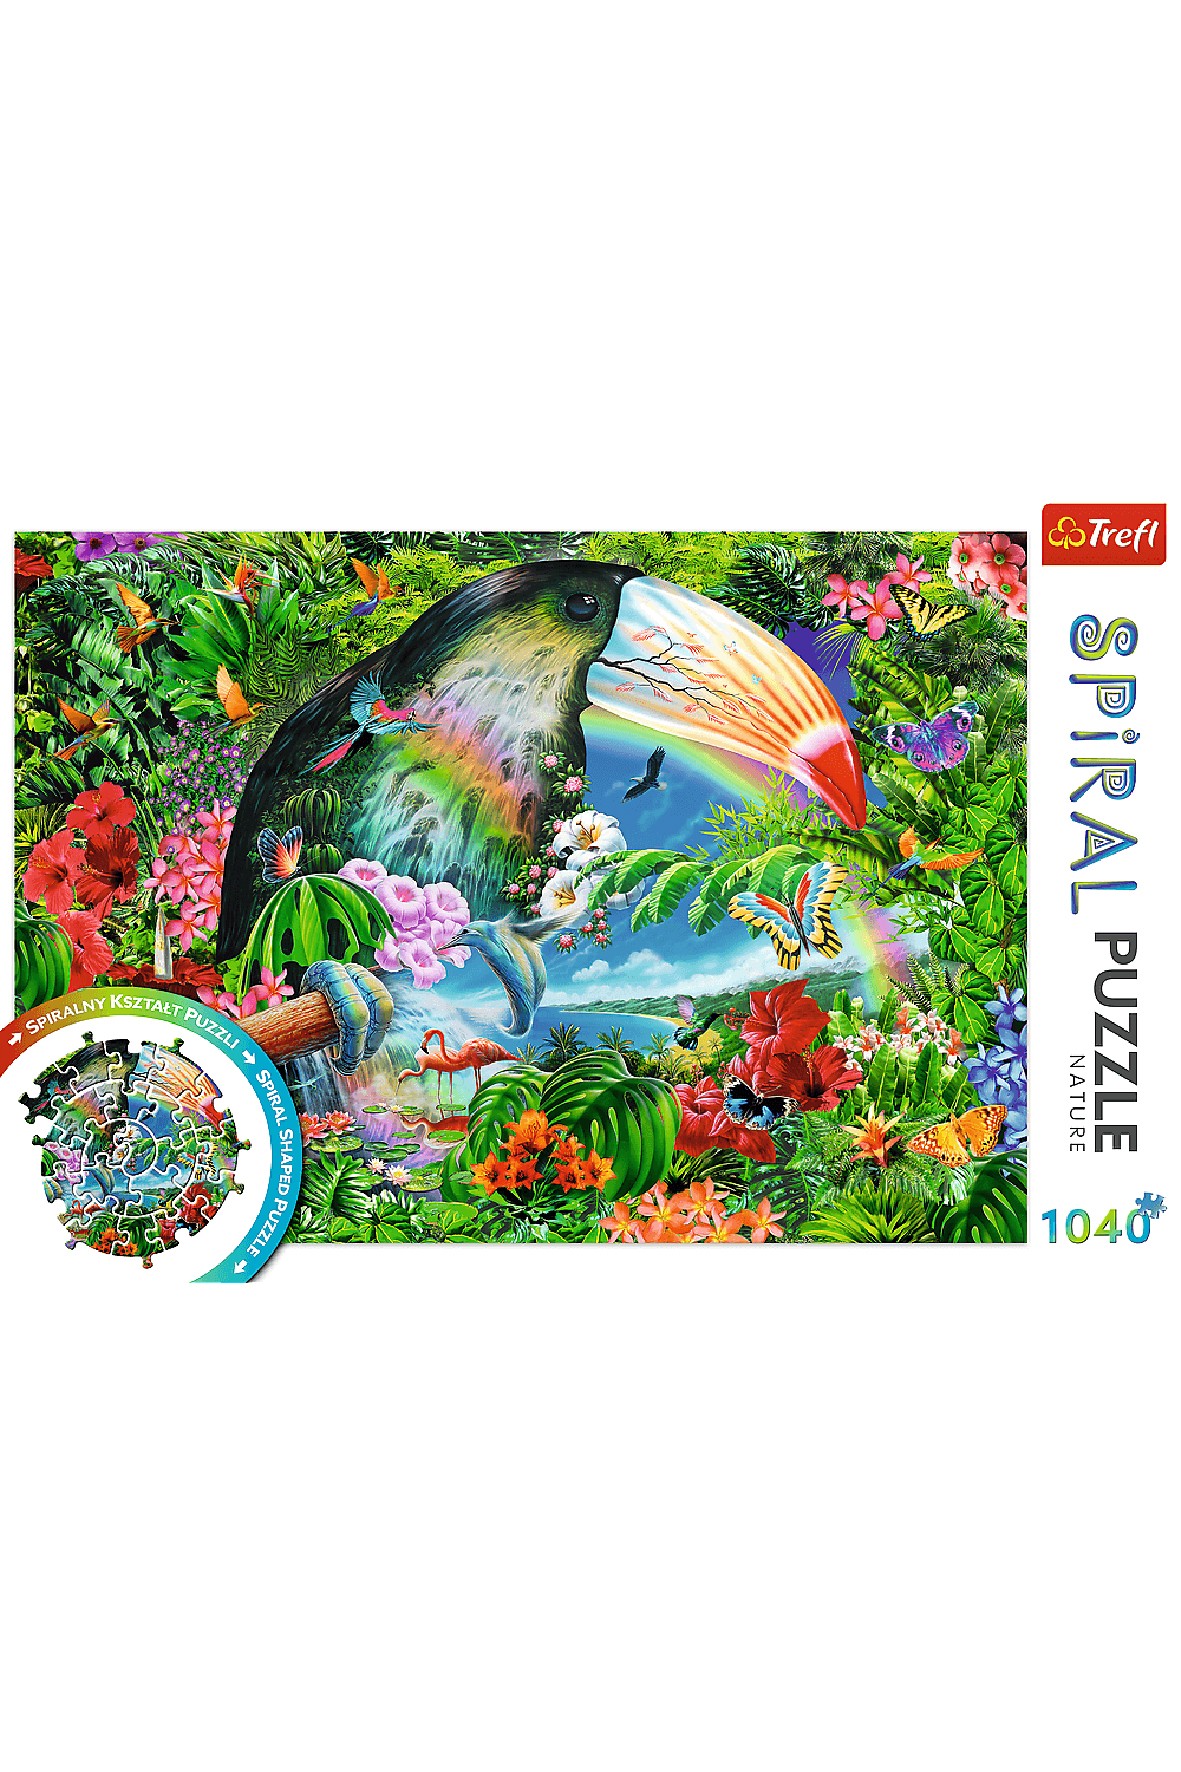 Puzzle Spiral - Tropikalne zwierzęta - 1040 elementy